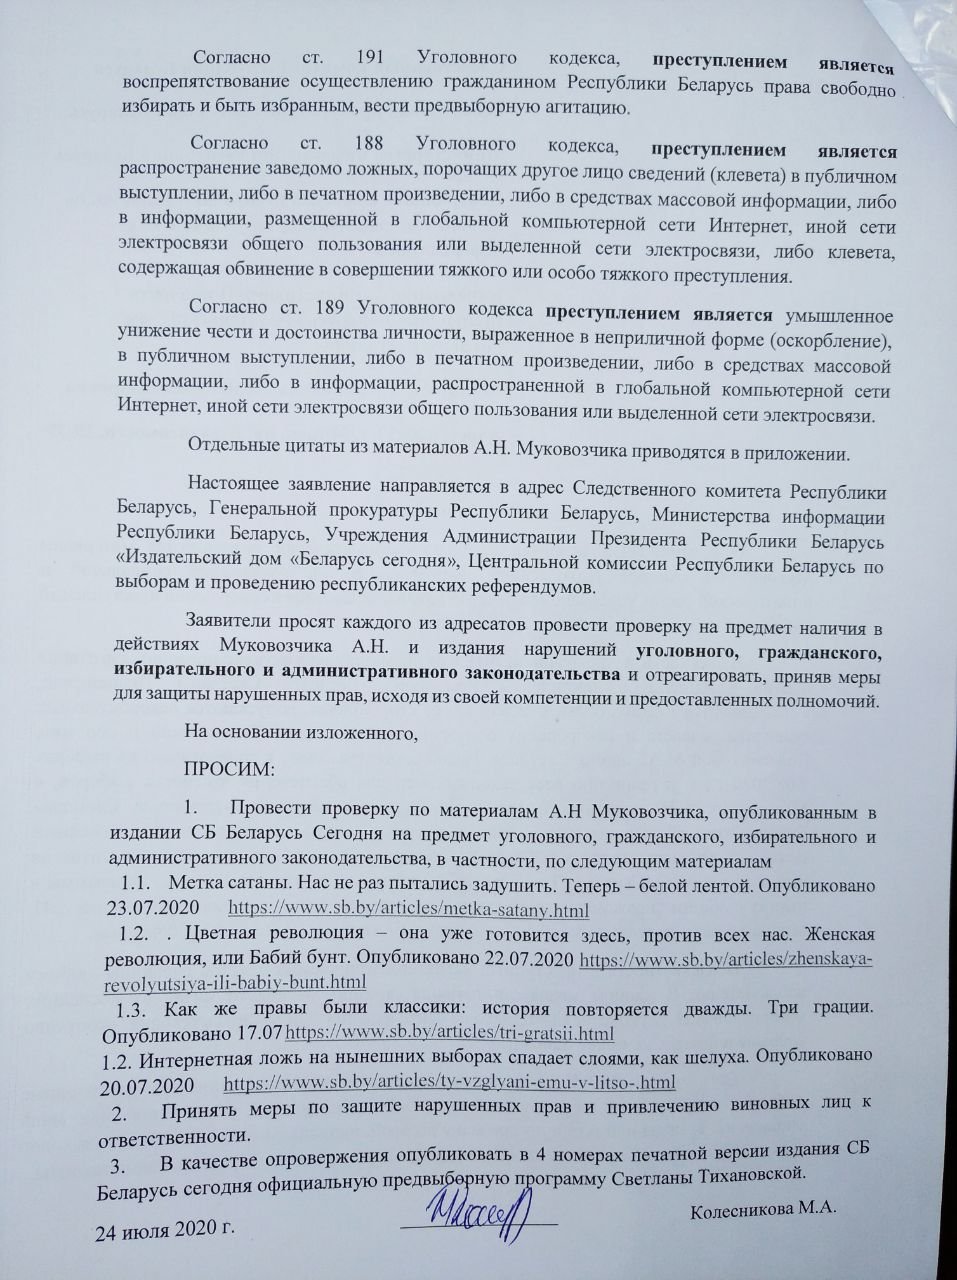 Мария Колесникова написала заявление на Муковозчика за его статьи в "СБ"